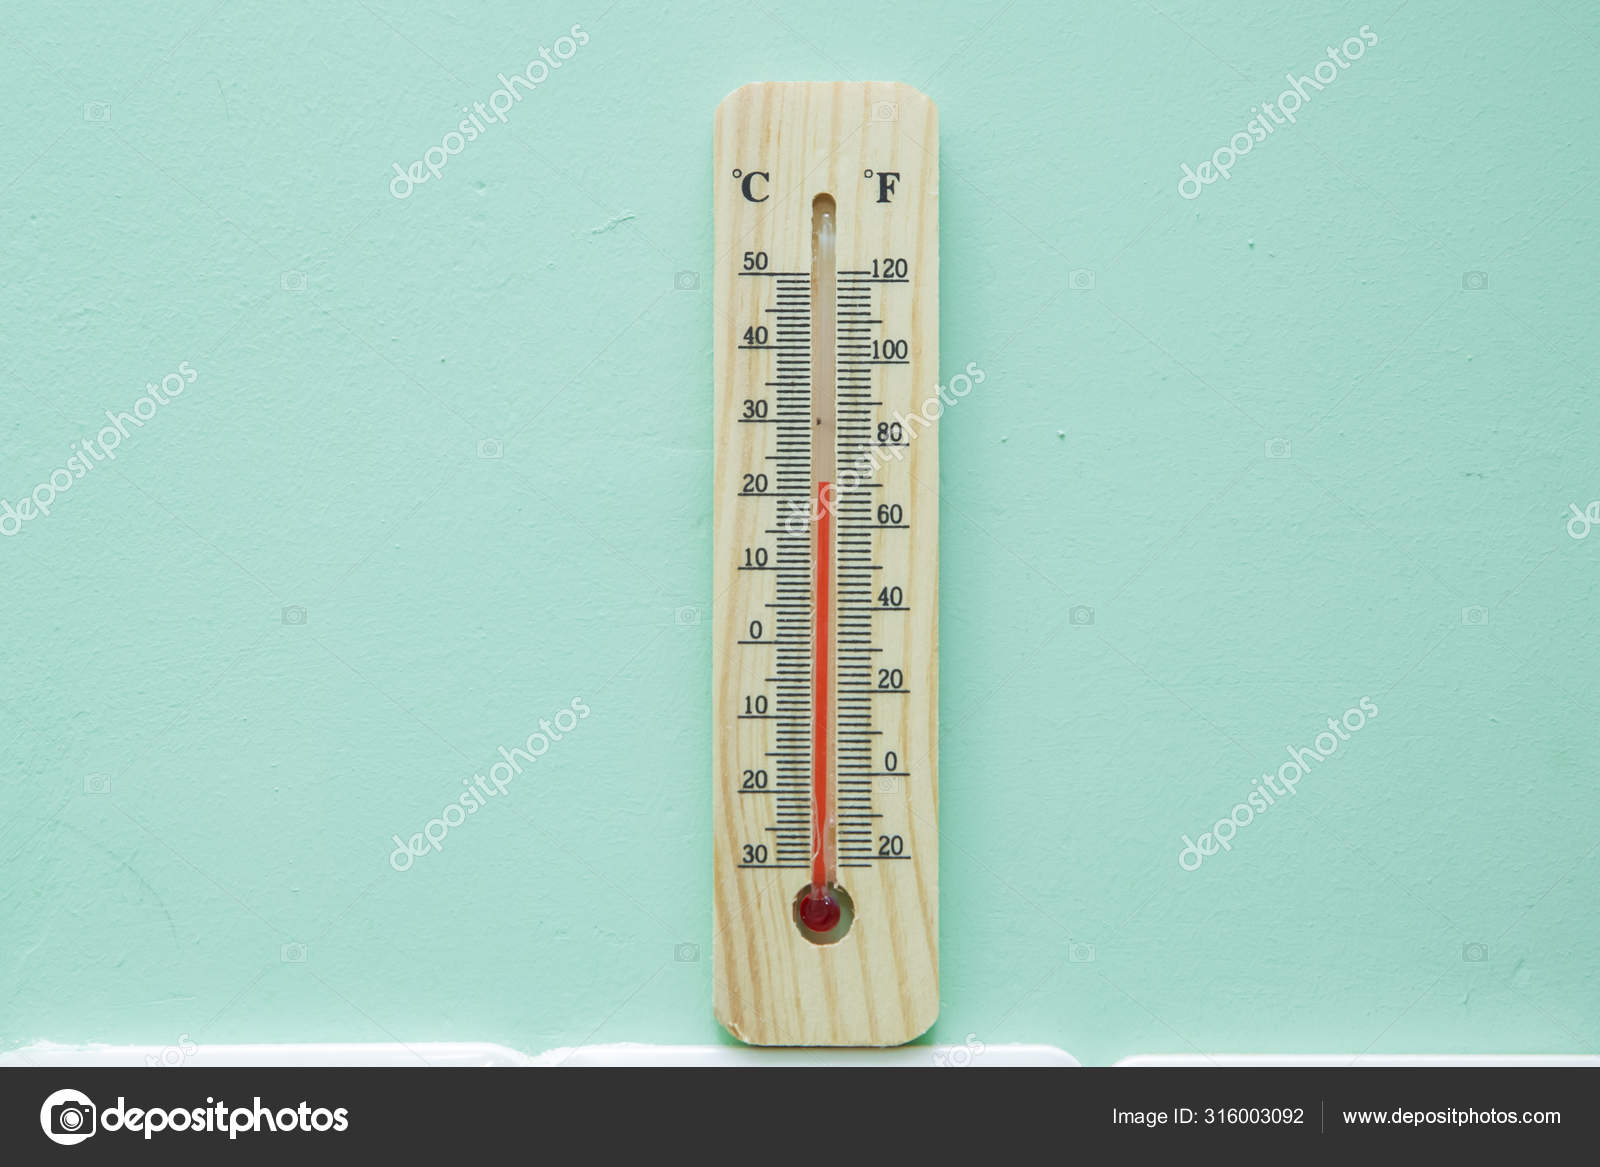 How do we measure air temperature?